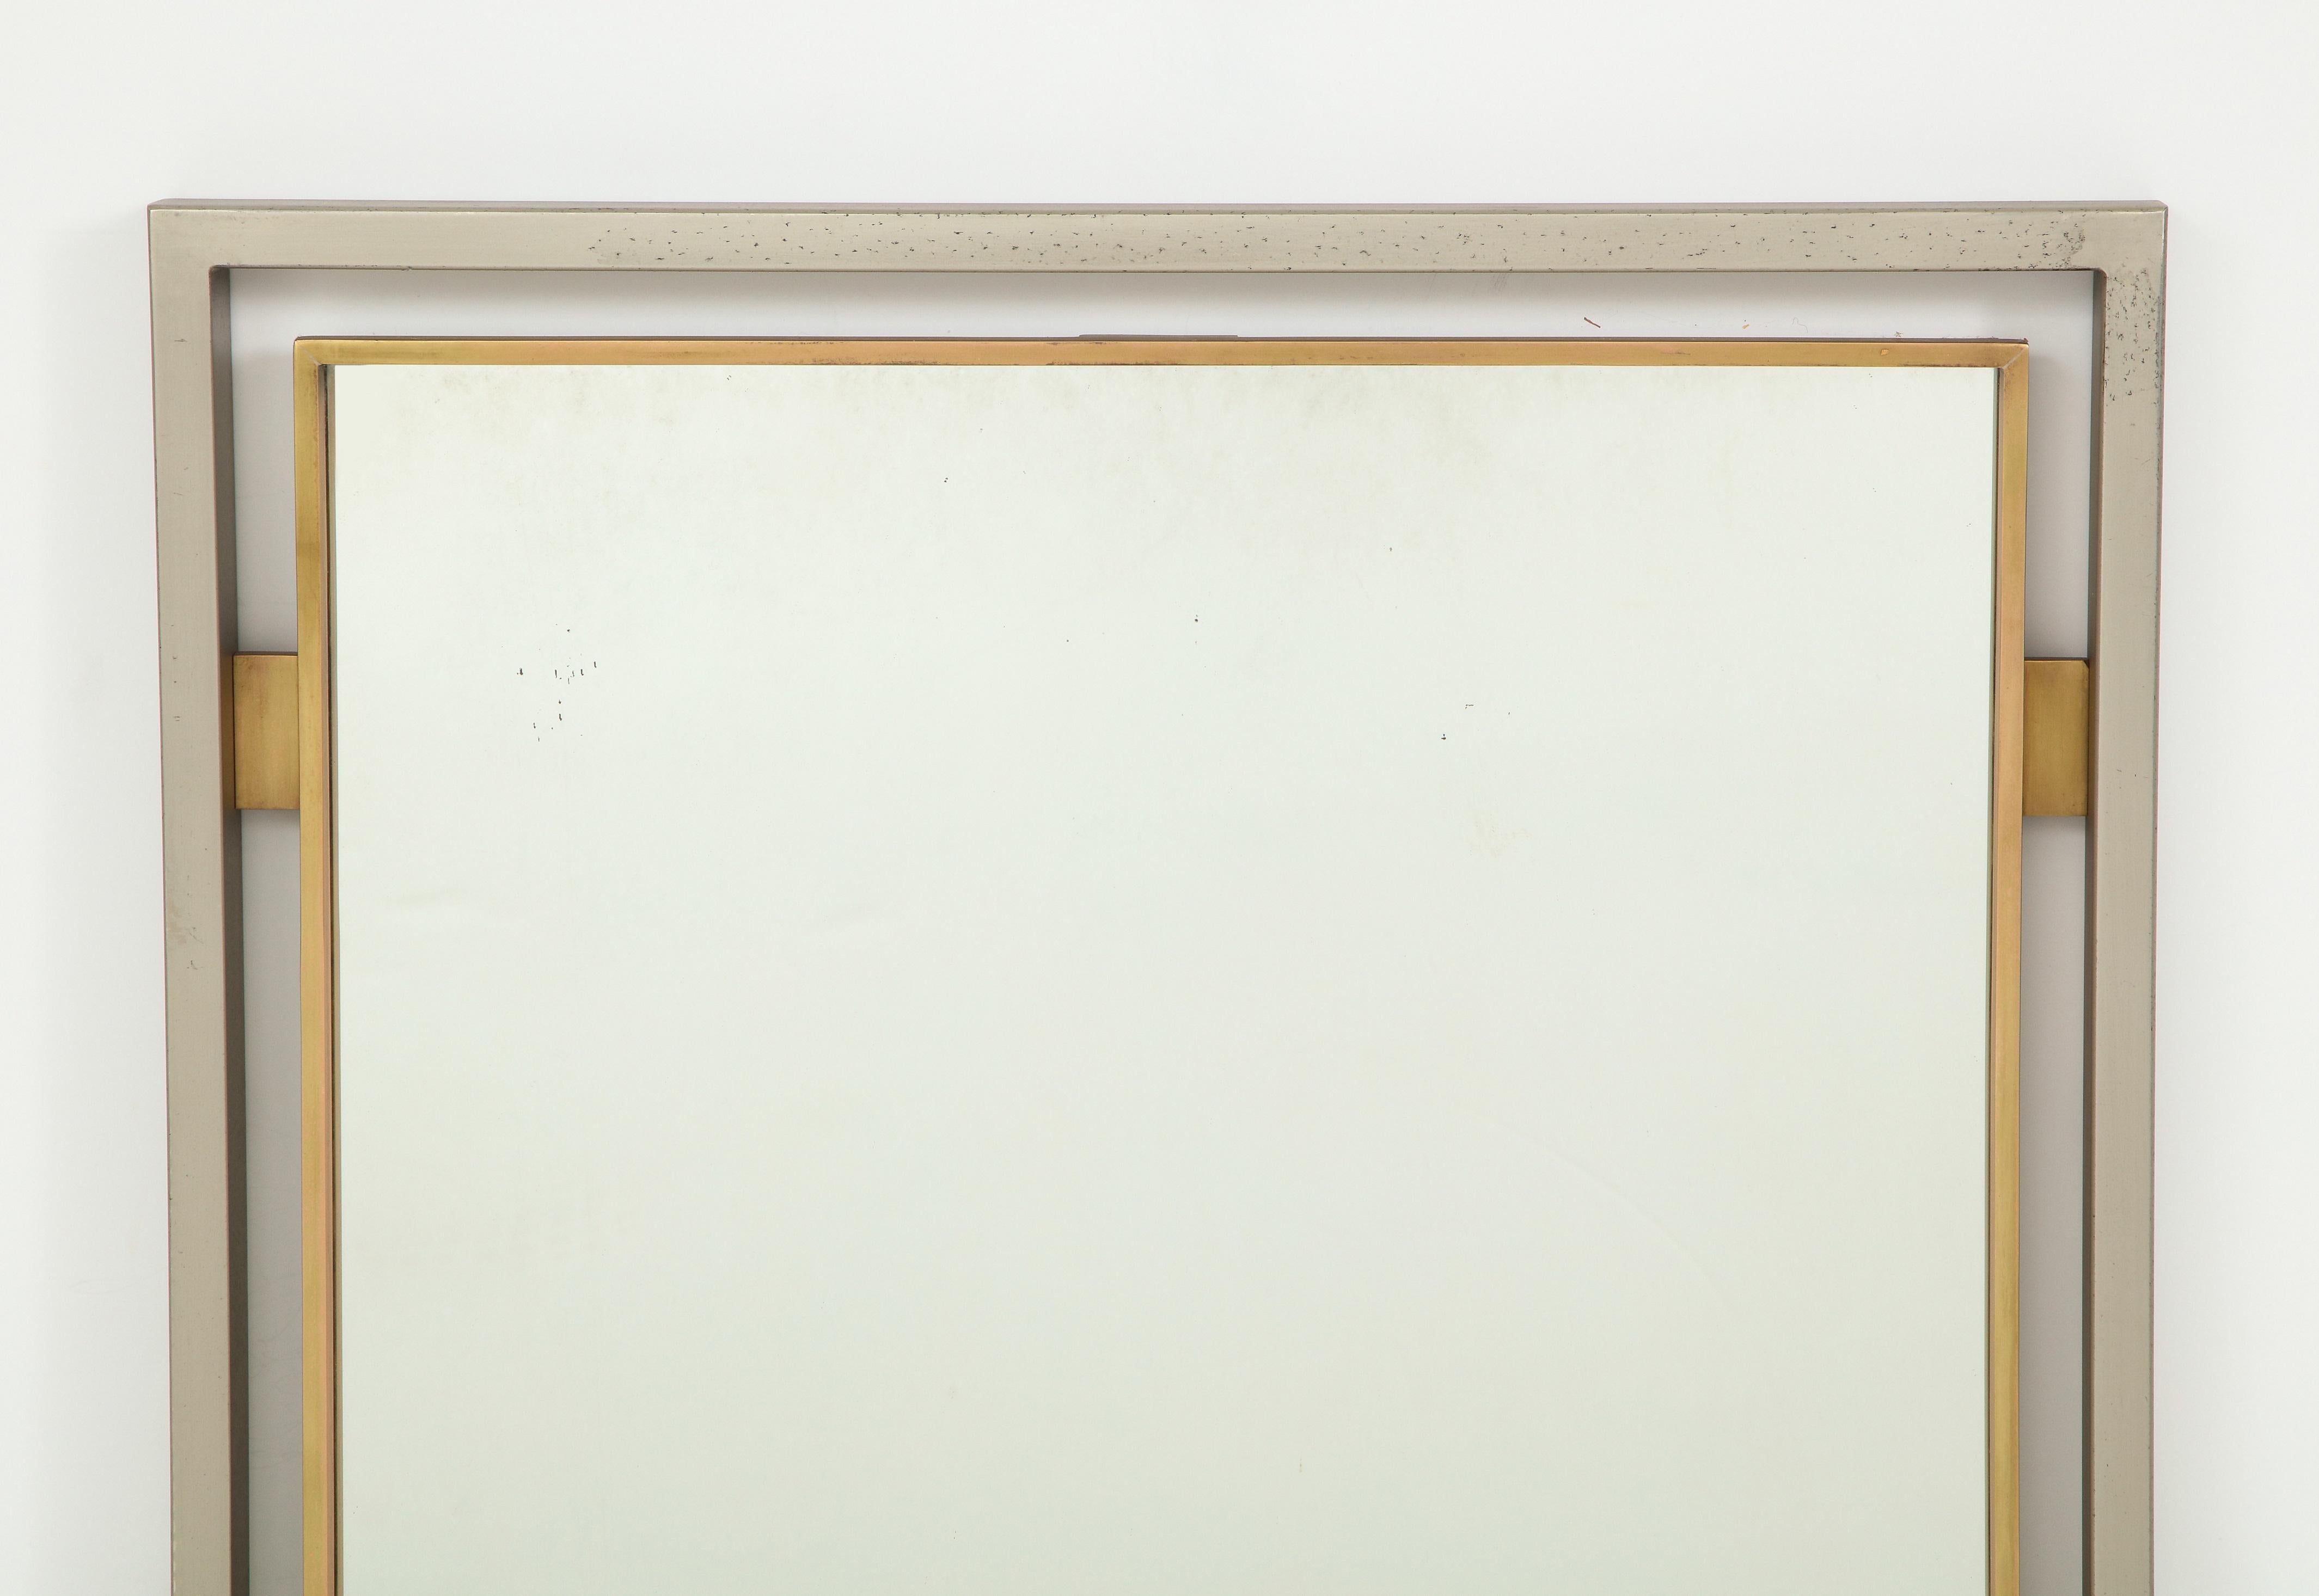 Miroir moderniste élégant en acier et laiton massif de Guy Lefevre pour Maison Jansen, années 1970. 
Taches d'oxydation sur le cadre en acier (voir photos), sinon en excellent état vintage.
 